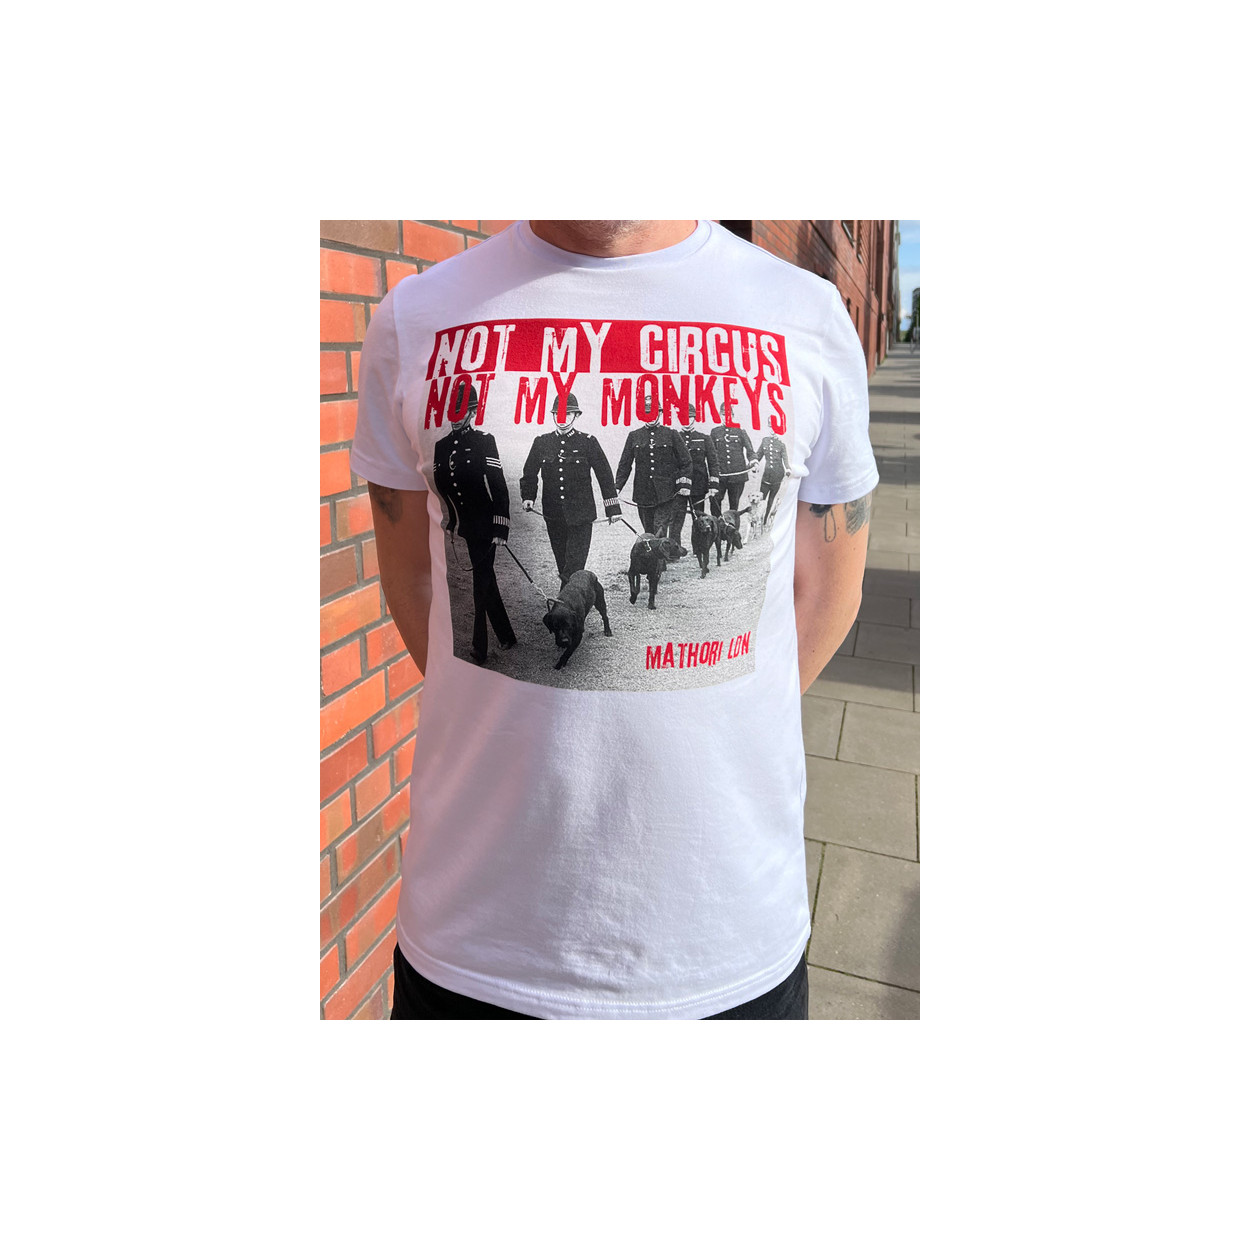 Mathori London - “Not my circus” T-Shirt in White